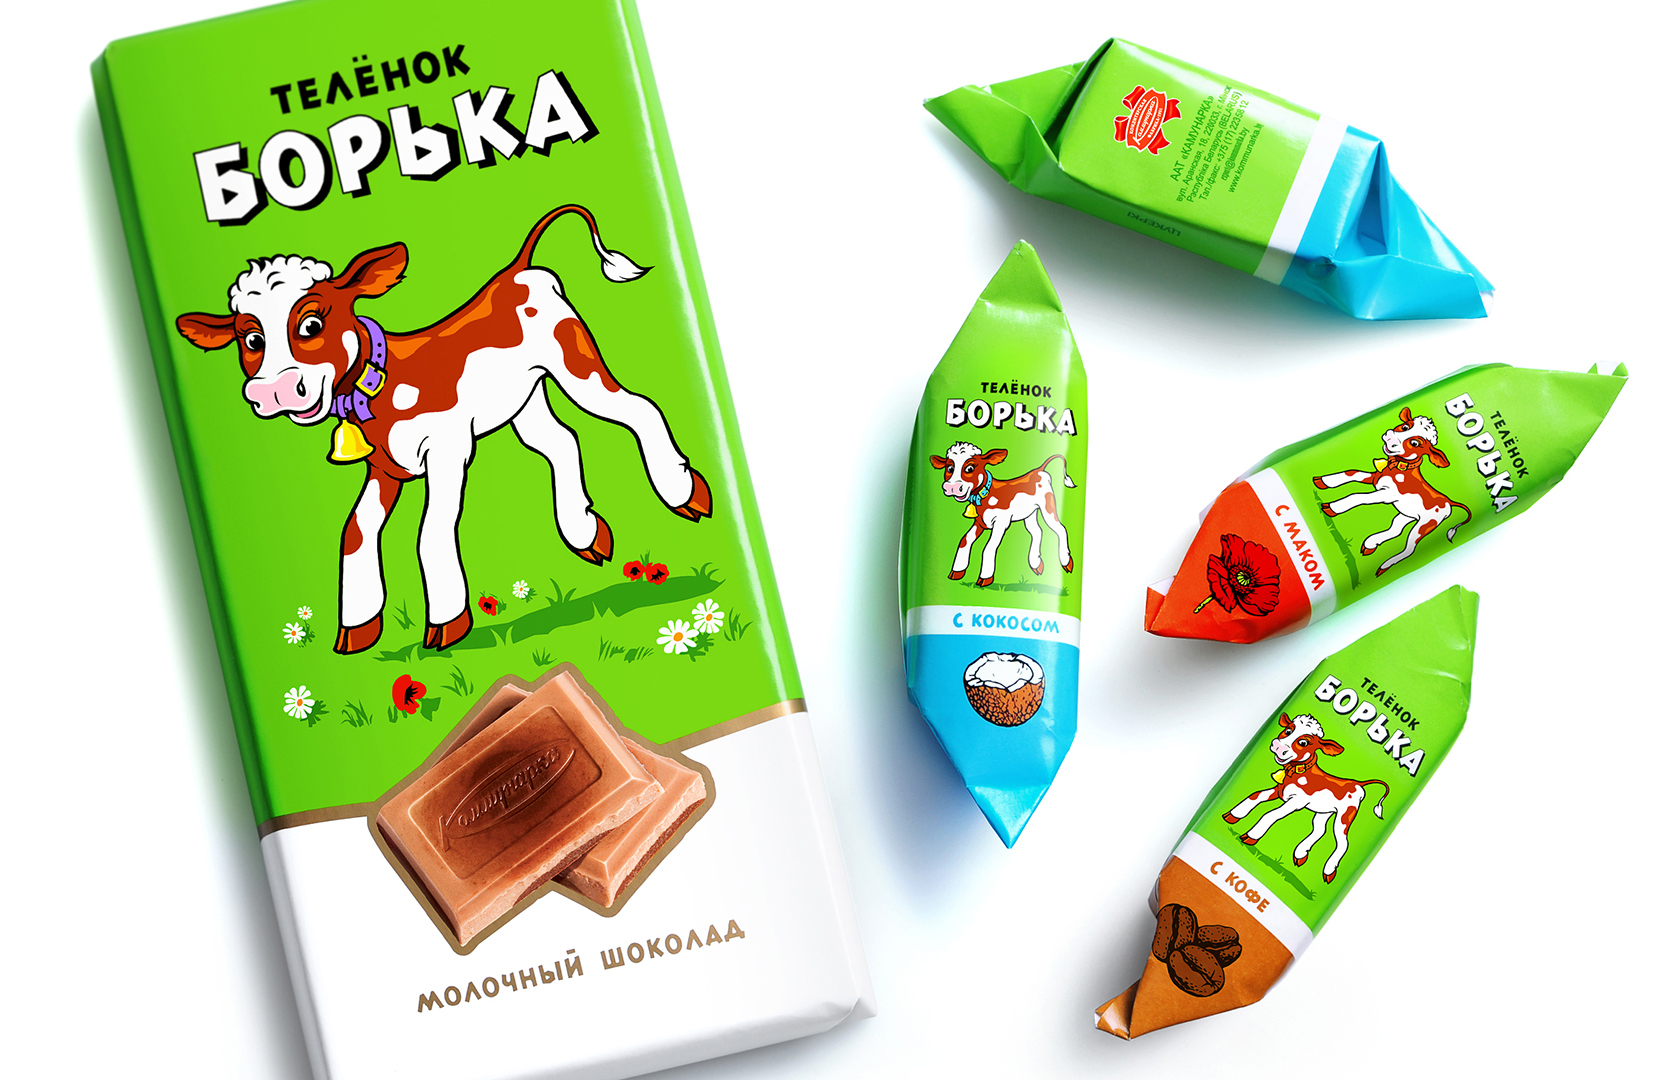 Конфетные этикетки. Этикетка конфеты. Дизайн упаковки шоколадных конфет. Конфеты теленок Борька. Белорусские конфеты.